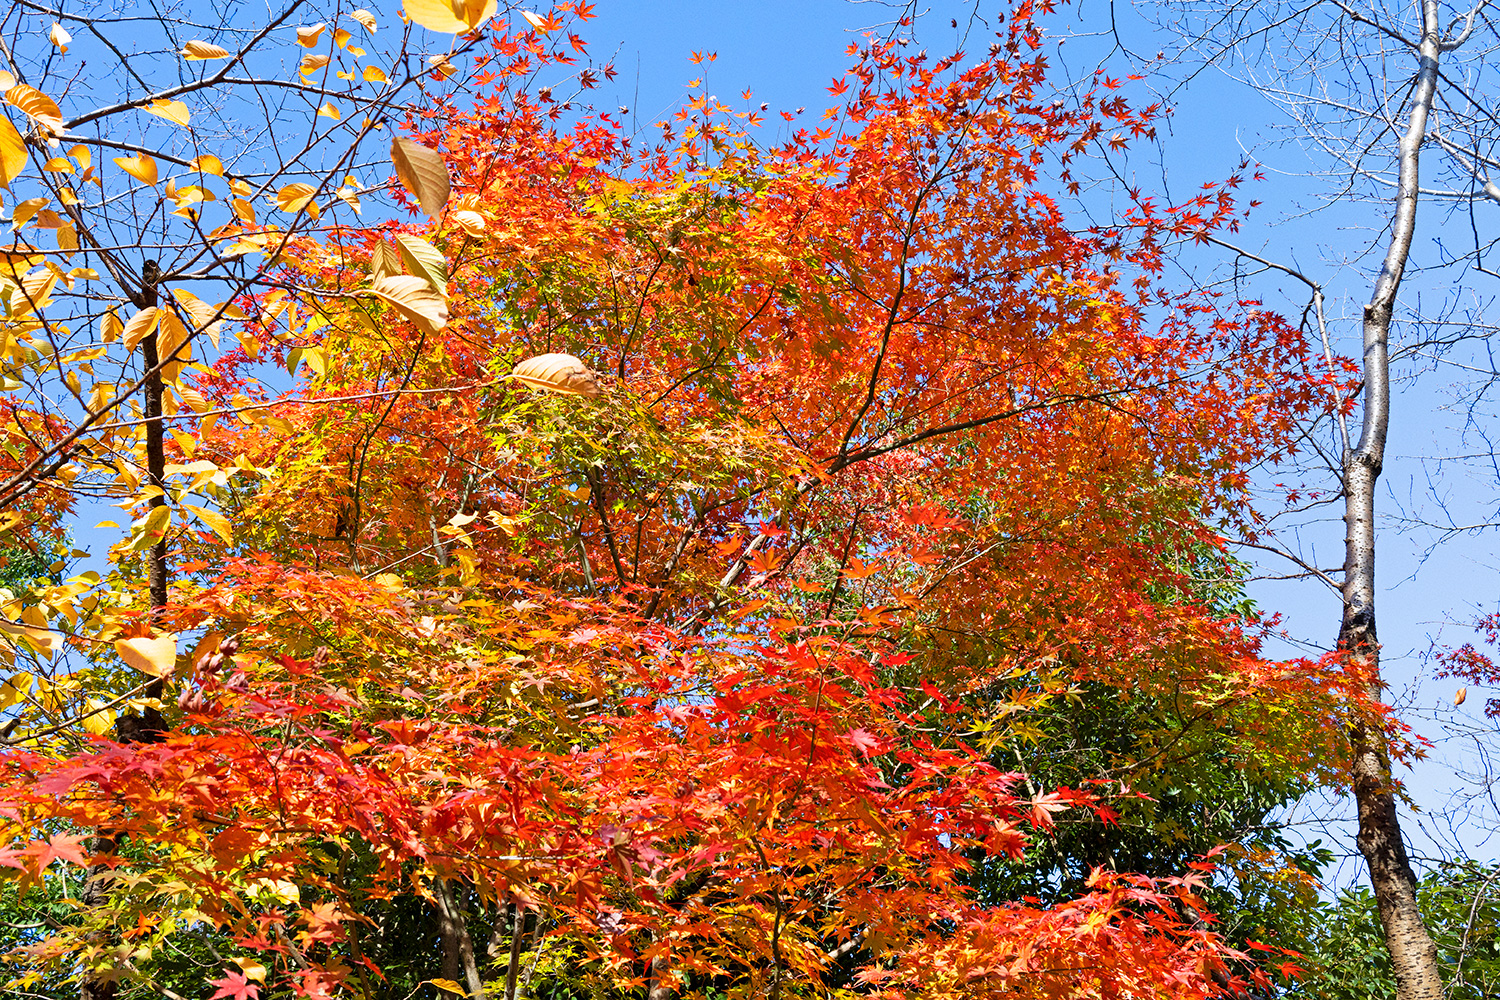 Las hojas, que han crecido a lo largo del año, tejen en la estación otoñal un brillante tapiz de follaje rojizo, ocre, dorado y verde (Tokio, diciembre de 2022)